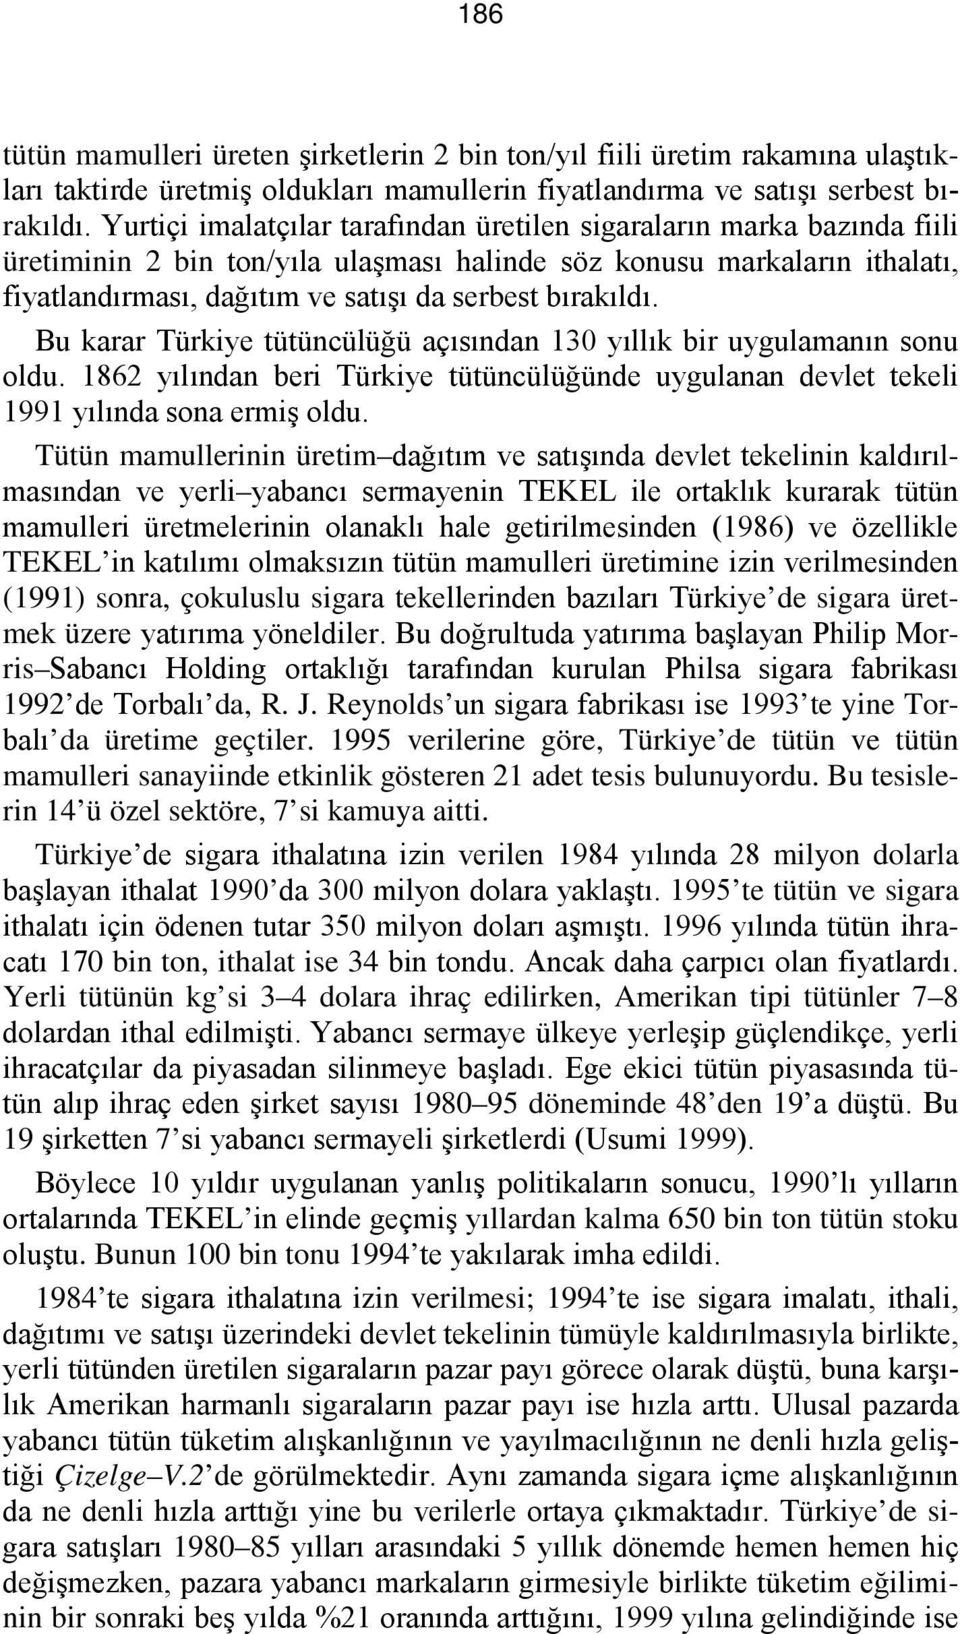 bırakıldı. Bu karar Türkiye tütüncülüğü açısından 130 yıllık bir uygulamanın sonu oldu. 1862 yılından beri Türkiye tütüncülüğünde uygulanan devlet tekeli 1991 yılında sona ermiş oldu.